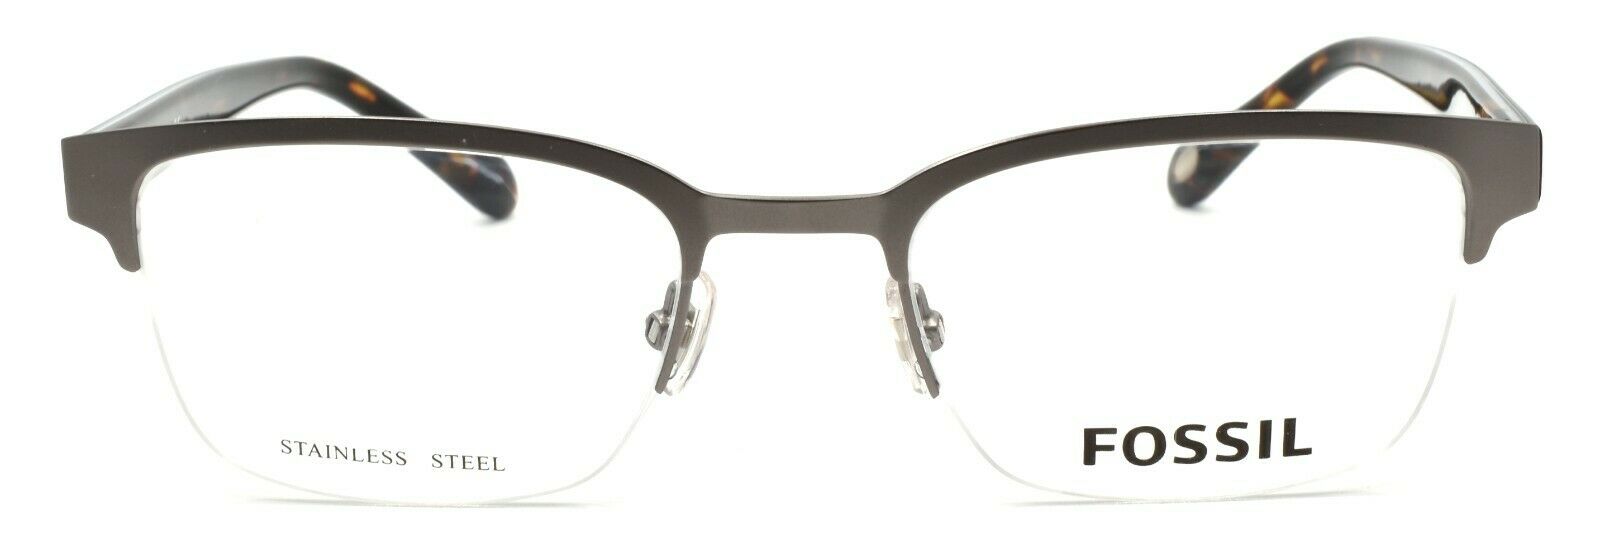 2-Fossil FOS 7005 KJ1 Men's Eyeglasses Frames Half-rim 50-20-150 Dark Ruthenium-762753986023-IKSpecs